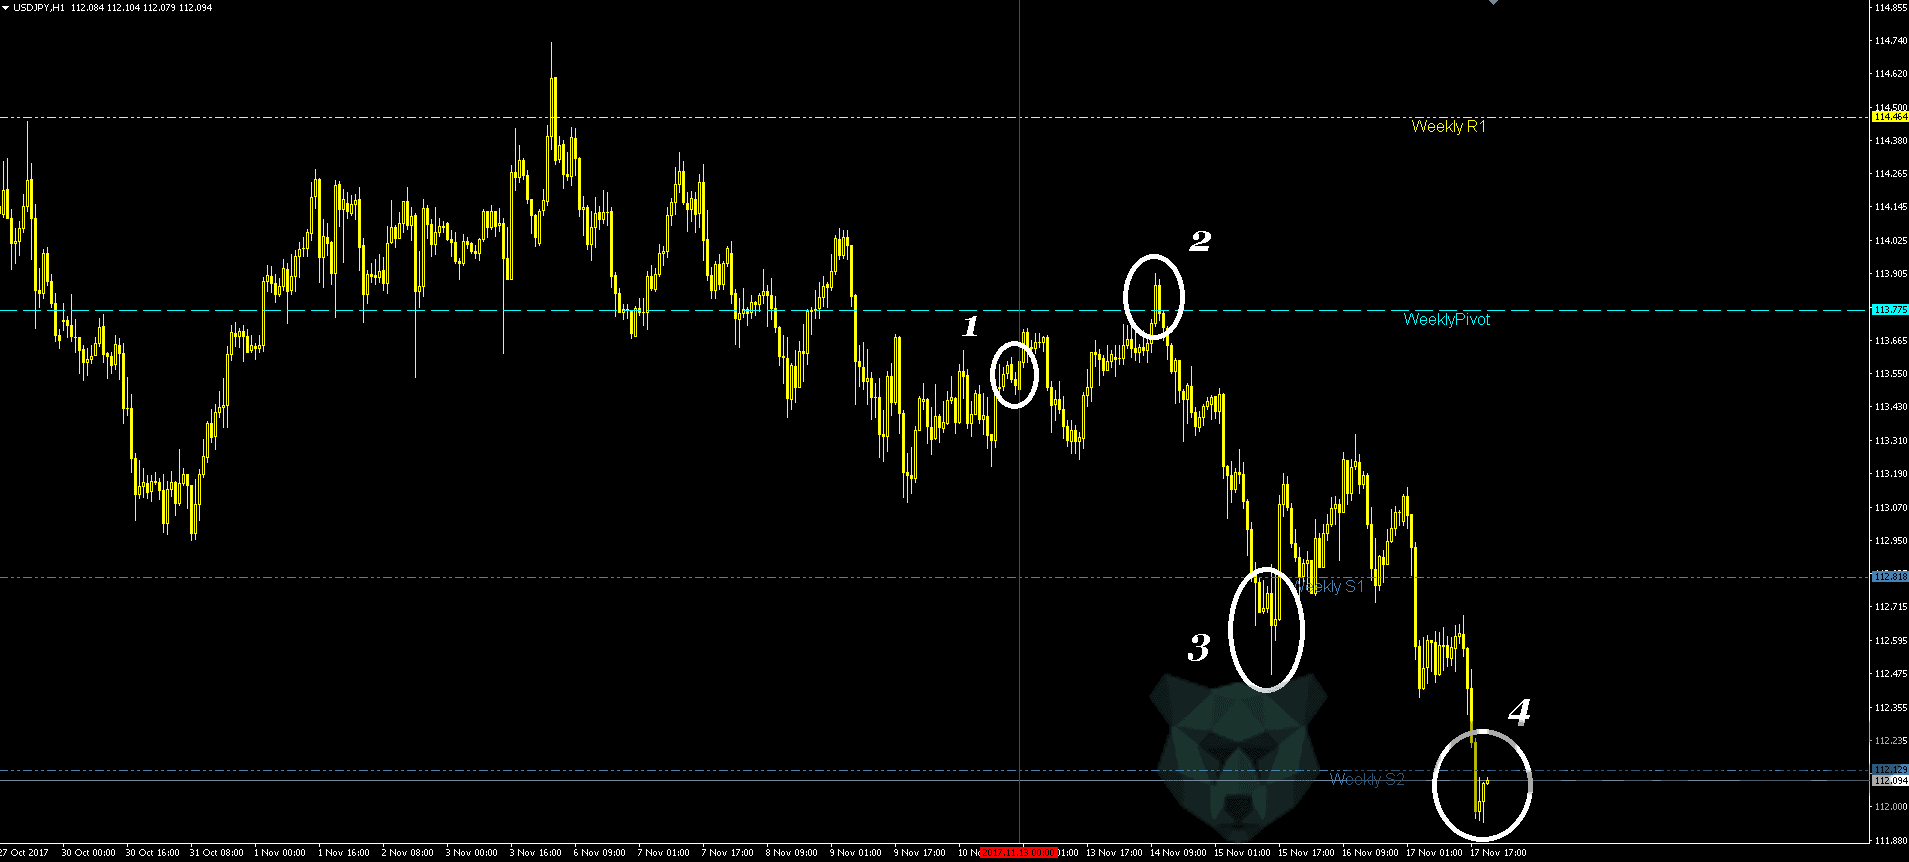 USD/JPY pivot points